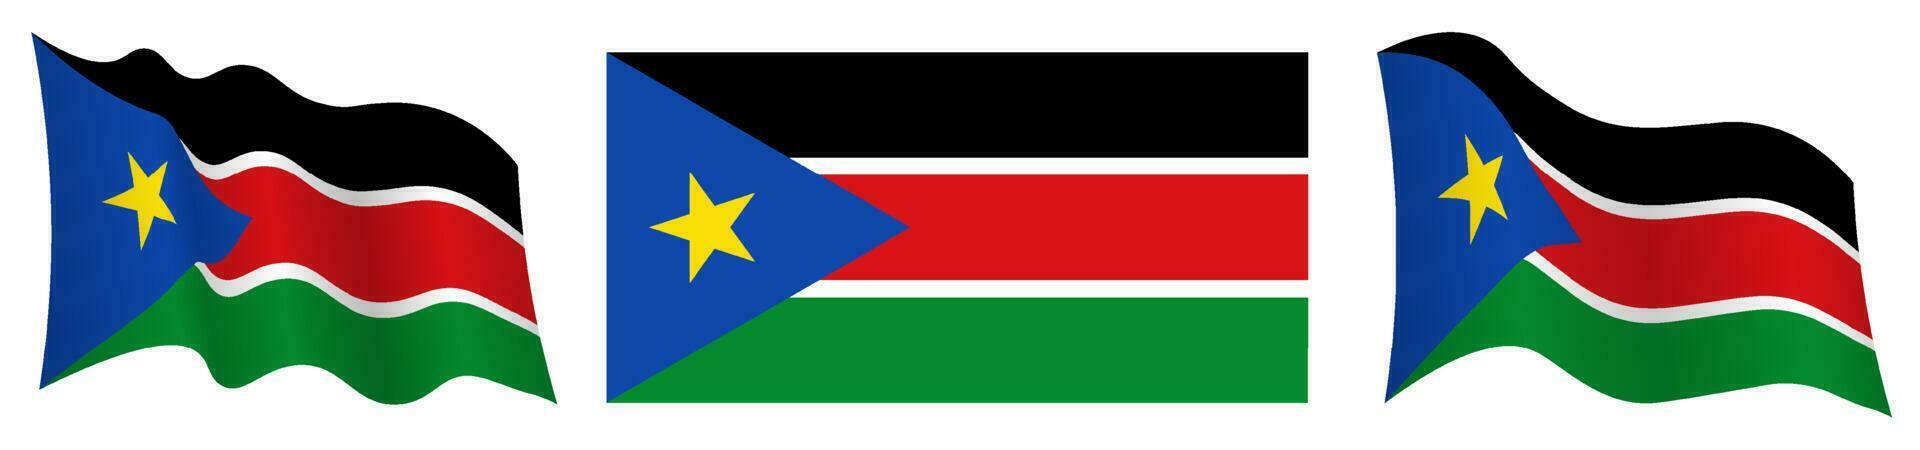 Süd Sudan Flagge im statisch Position und im Bewegung, flattern im Wind im genau Farben und Größen, auf Weiß Hintergrund vektor